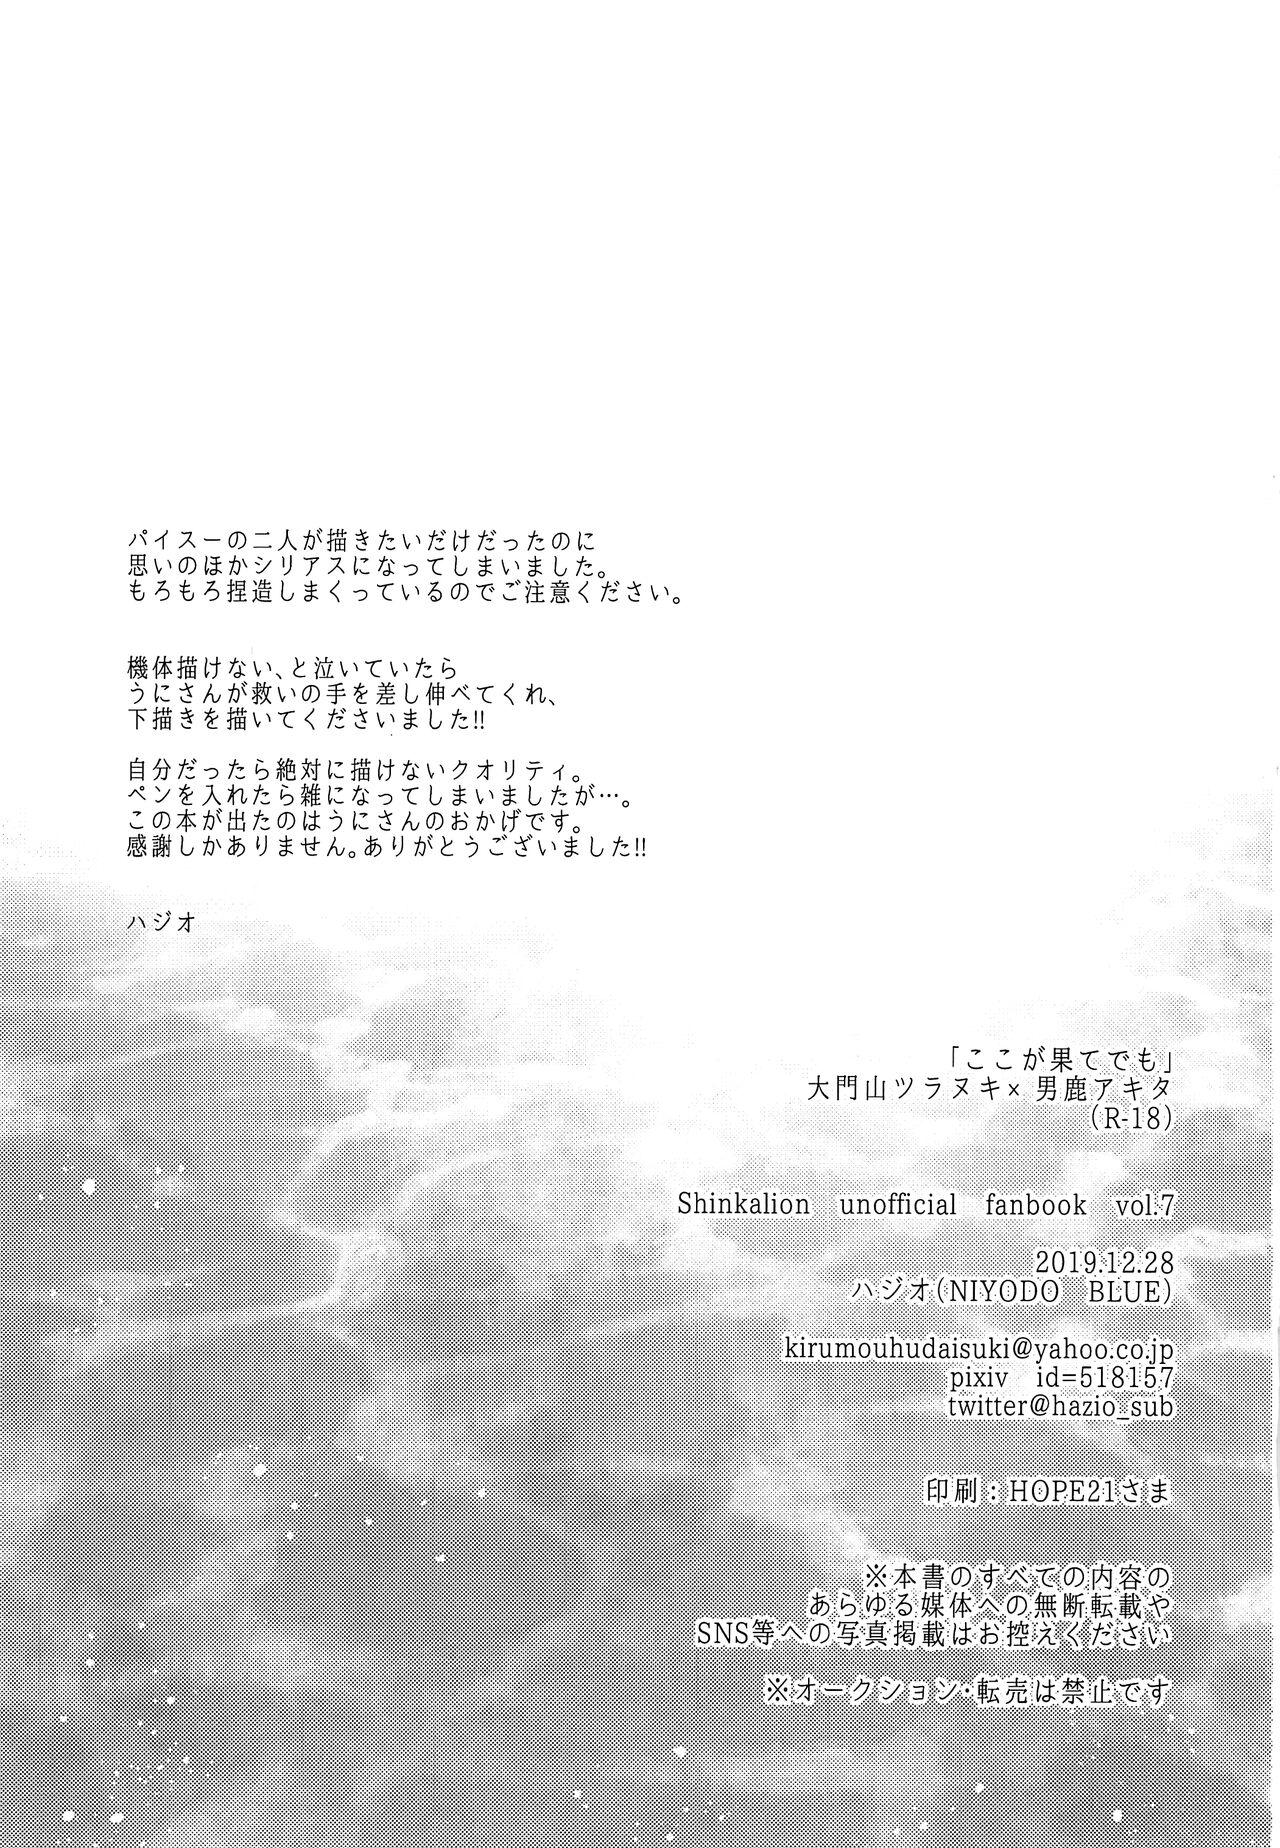 Realamateur Koko ga Hate demo - Shinkansen henkei robo shinkalion Small - Page 2